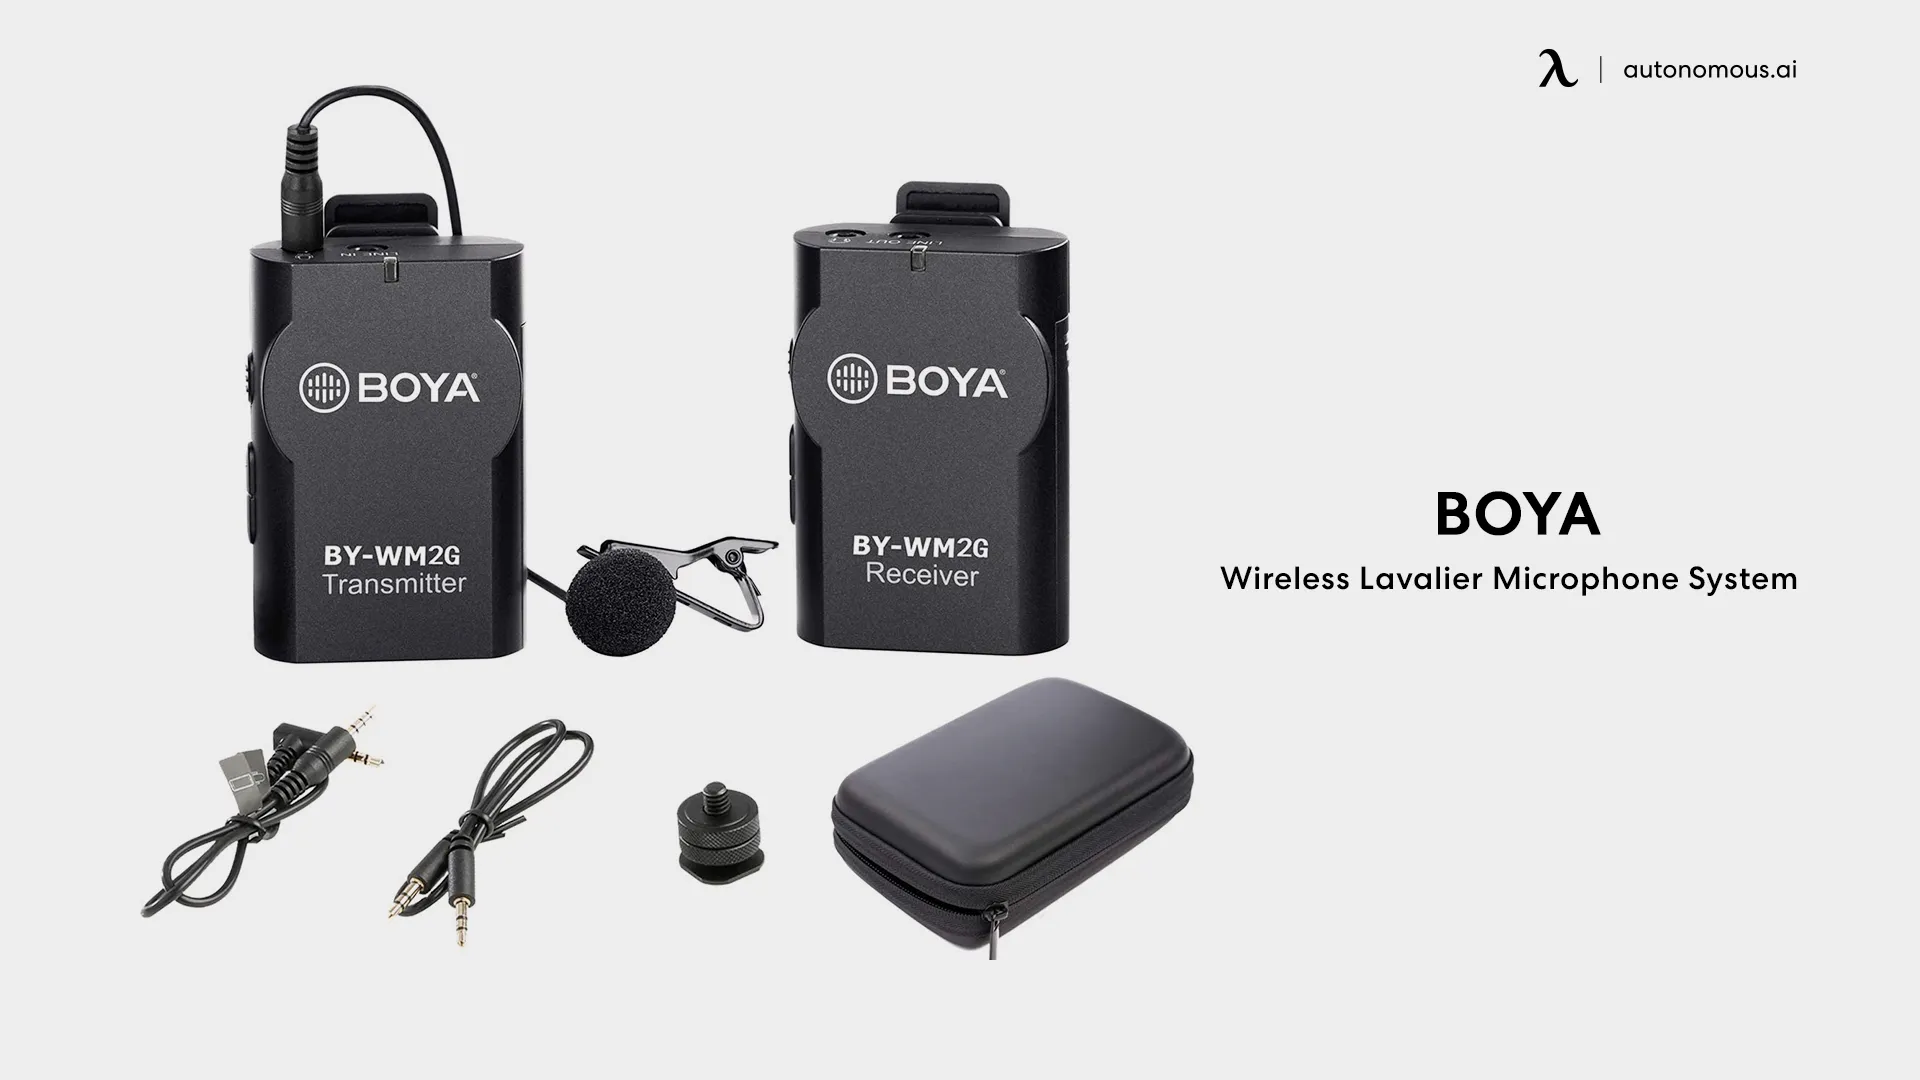 Wireless Lavalier Microphone System by Boya